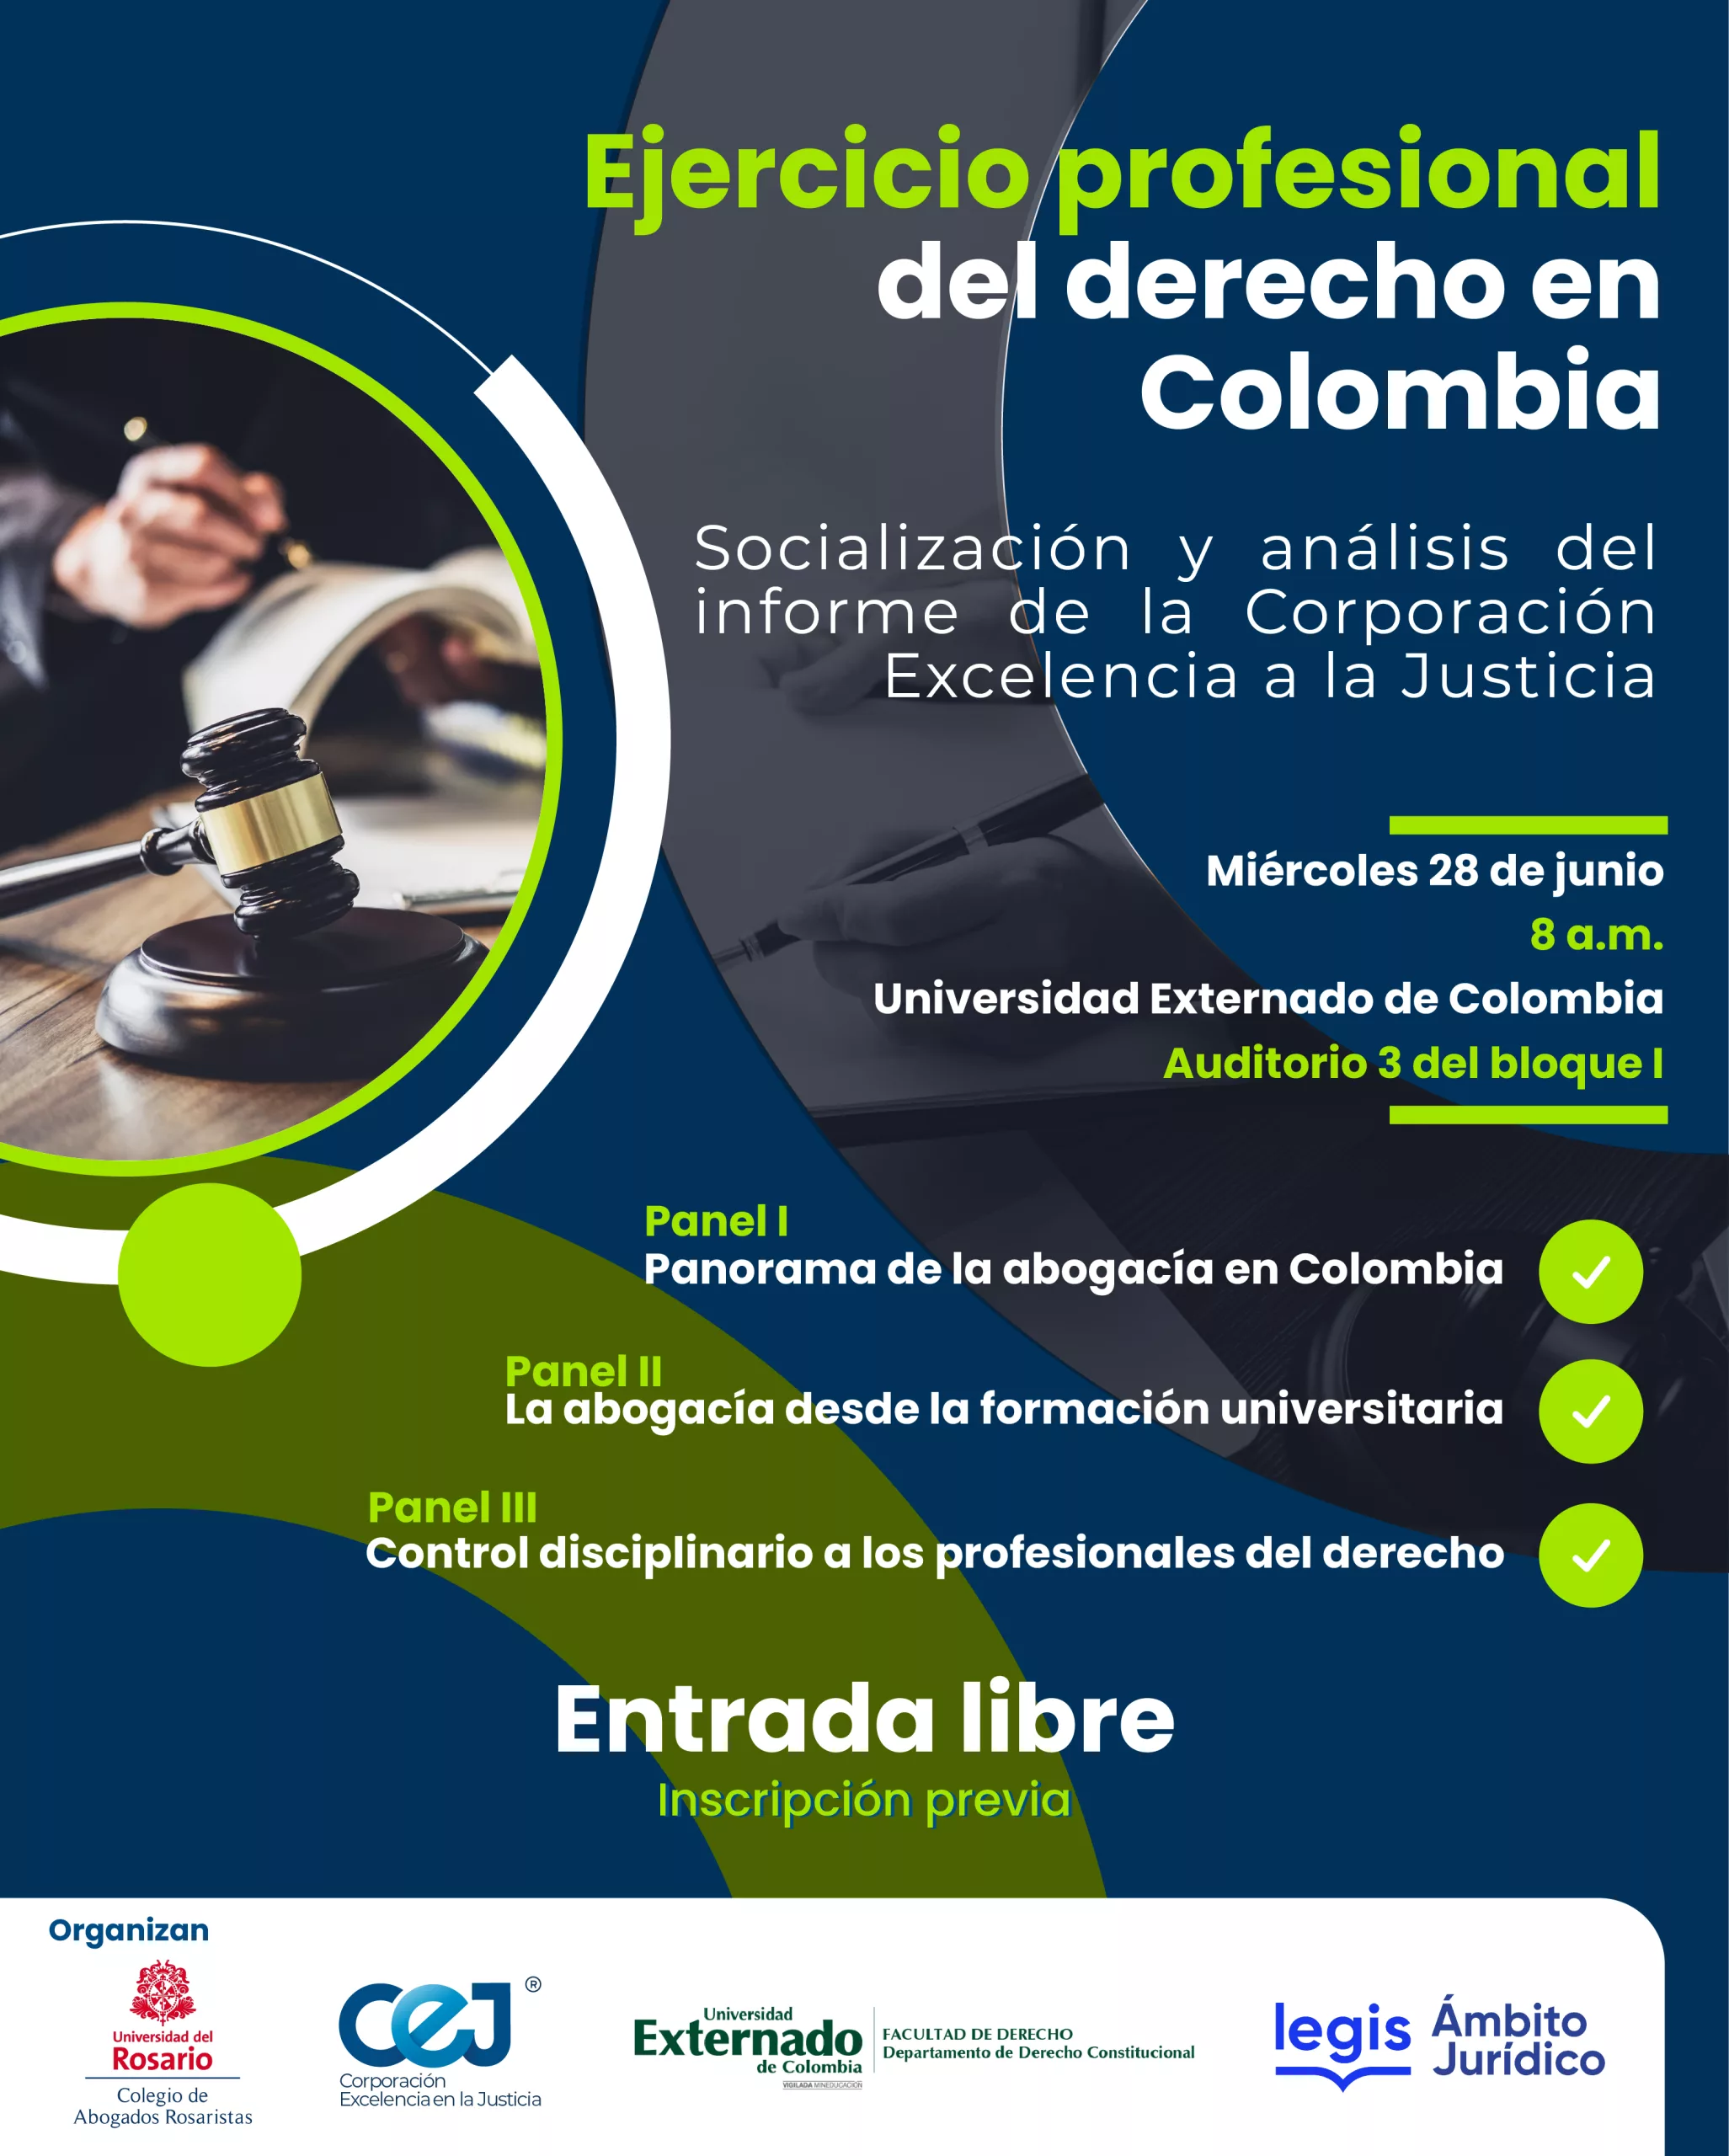 Foro “Ejercicio profesional del derecho en Colombia”